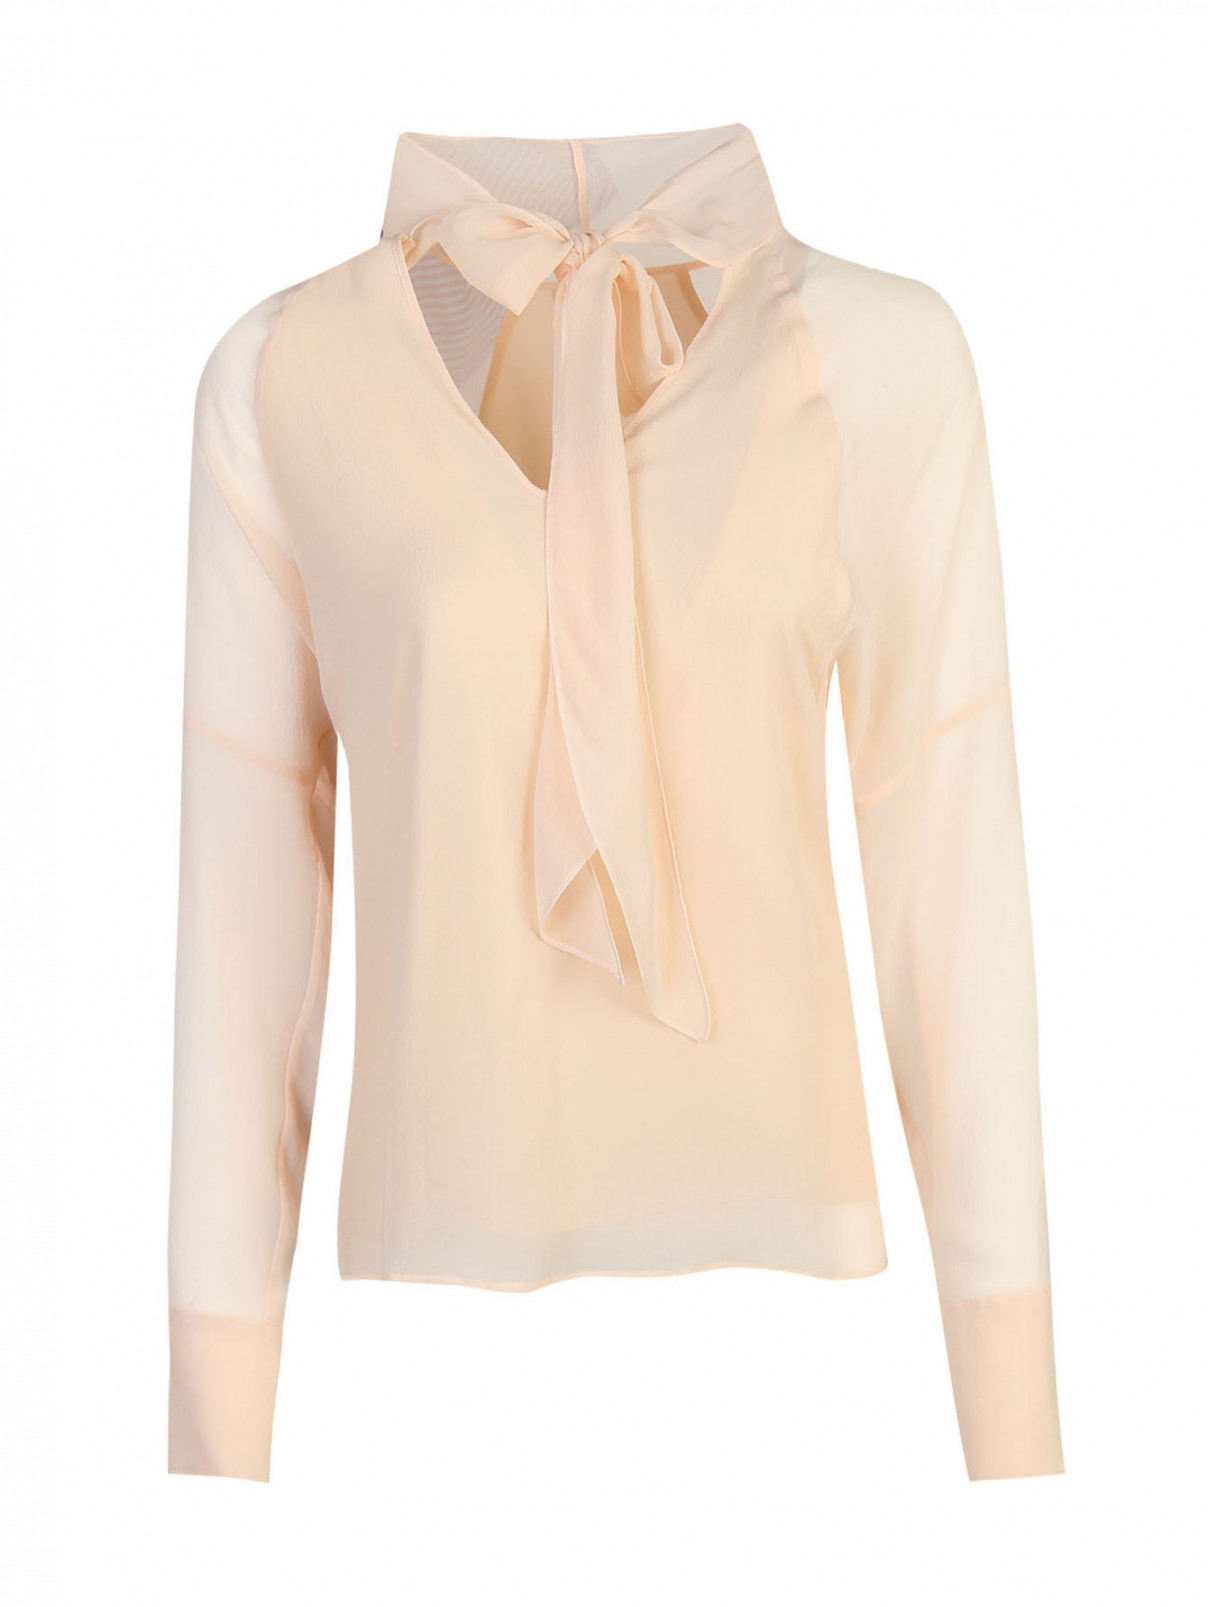 Блуза из шелка с v-образной горловиной Strenesse  –  Общий вид  – Цвет:  Розовый